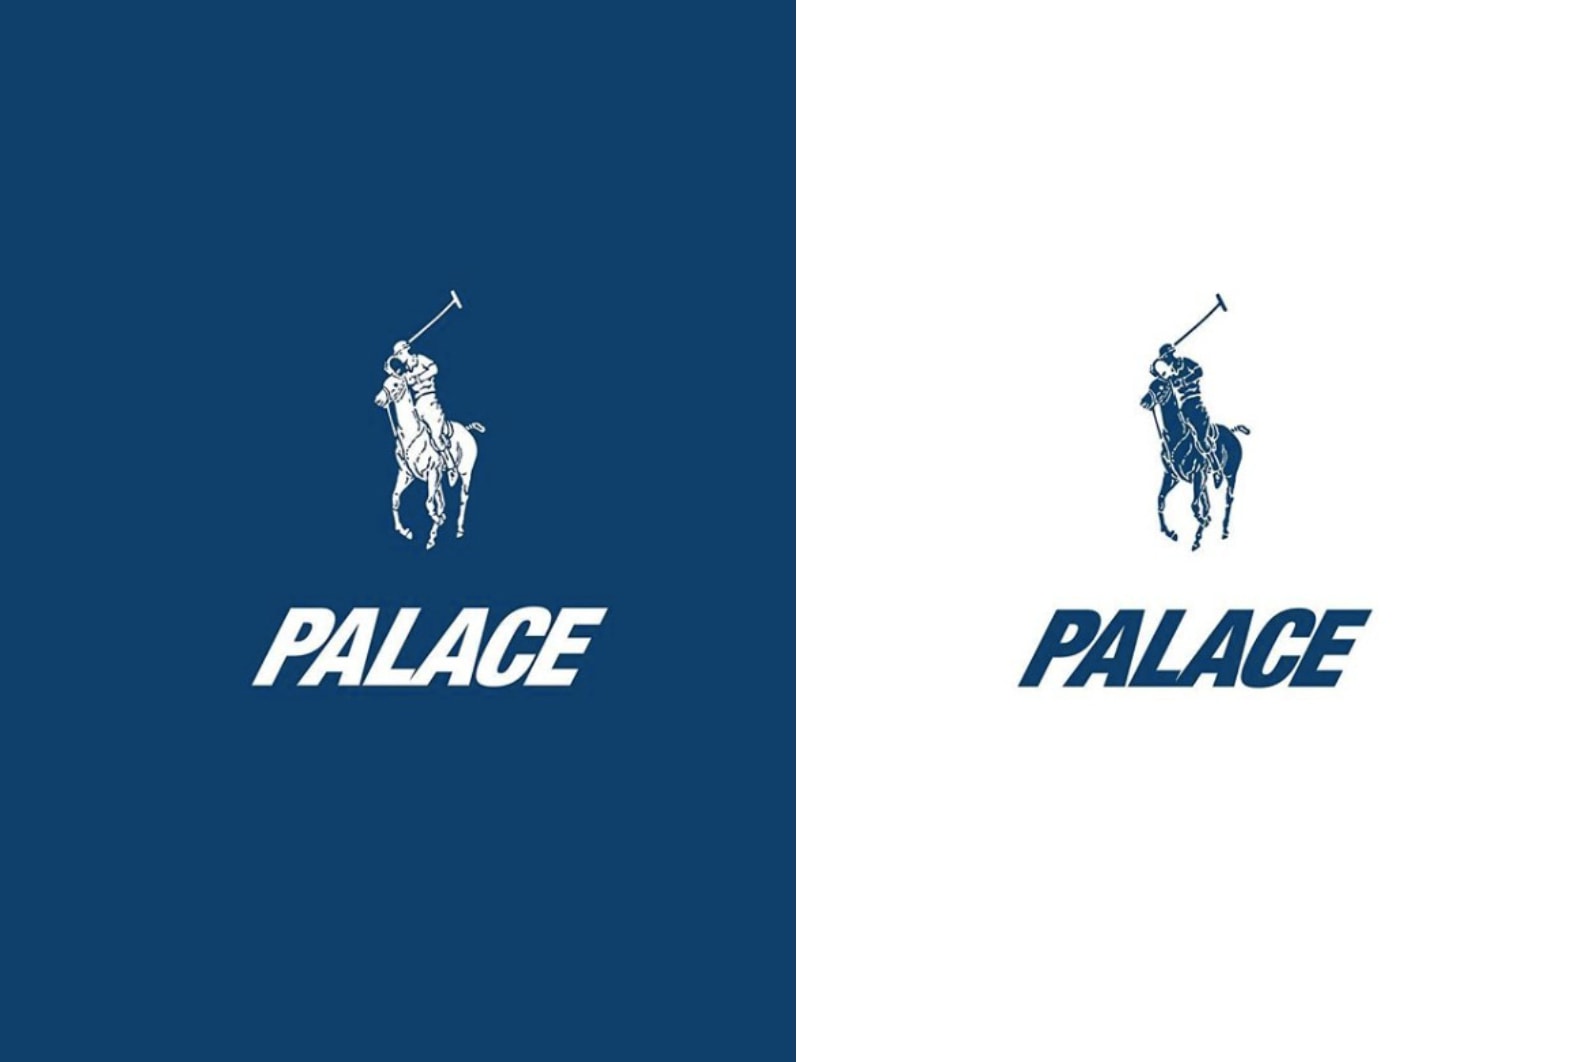 Palace x Ralph Lauren 聯乘「Palace Ralph Lauren」系列即將到來